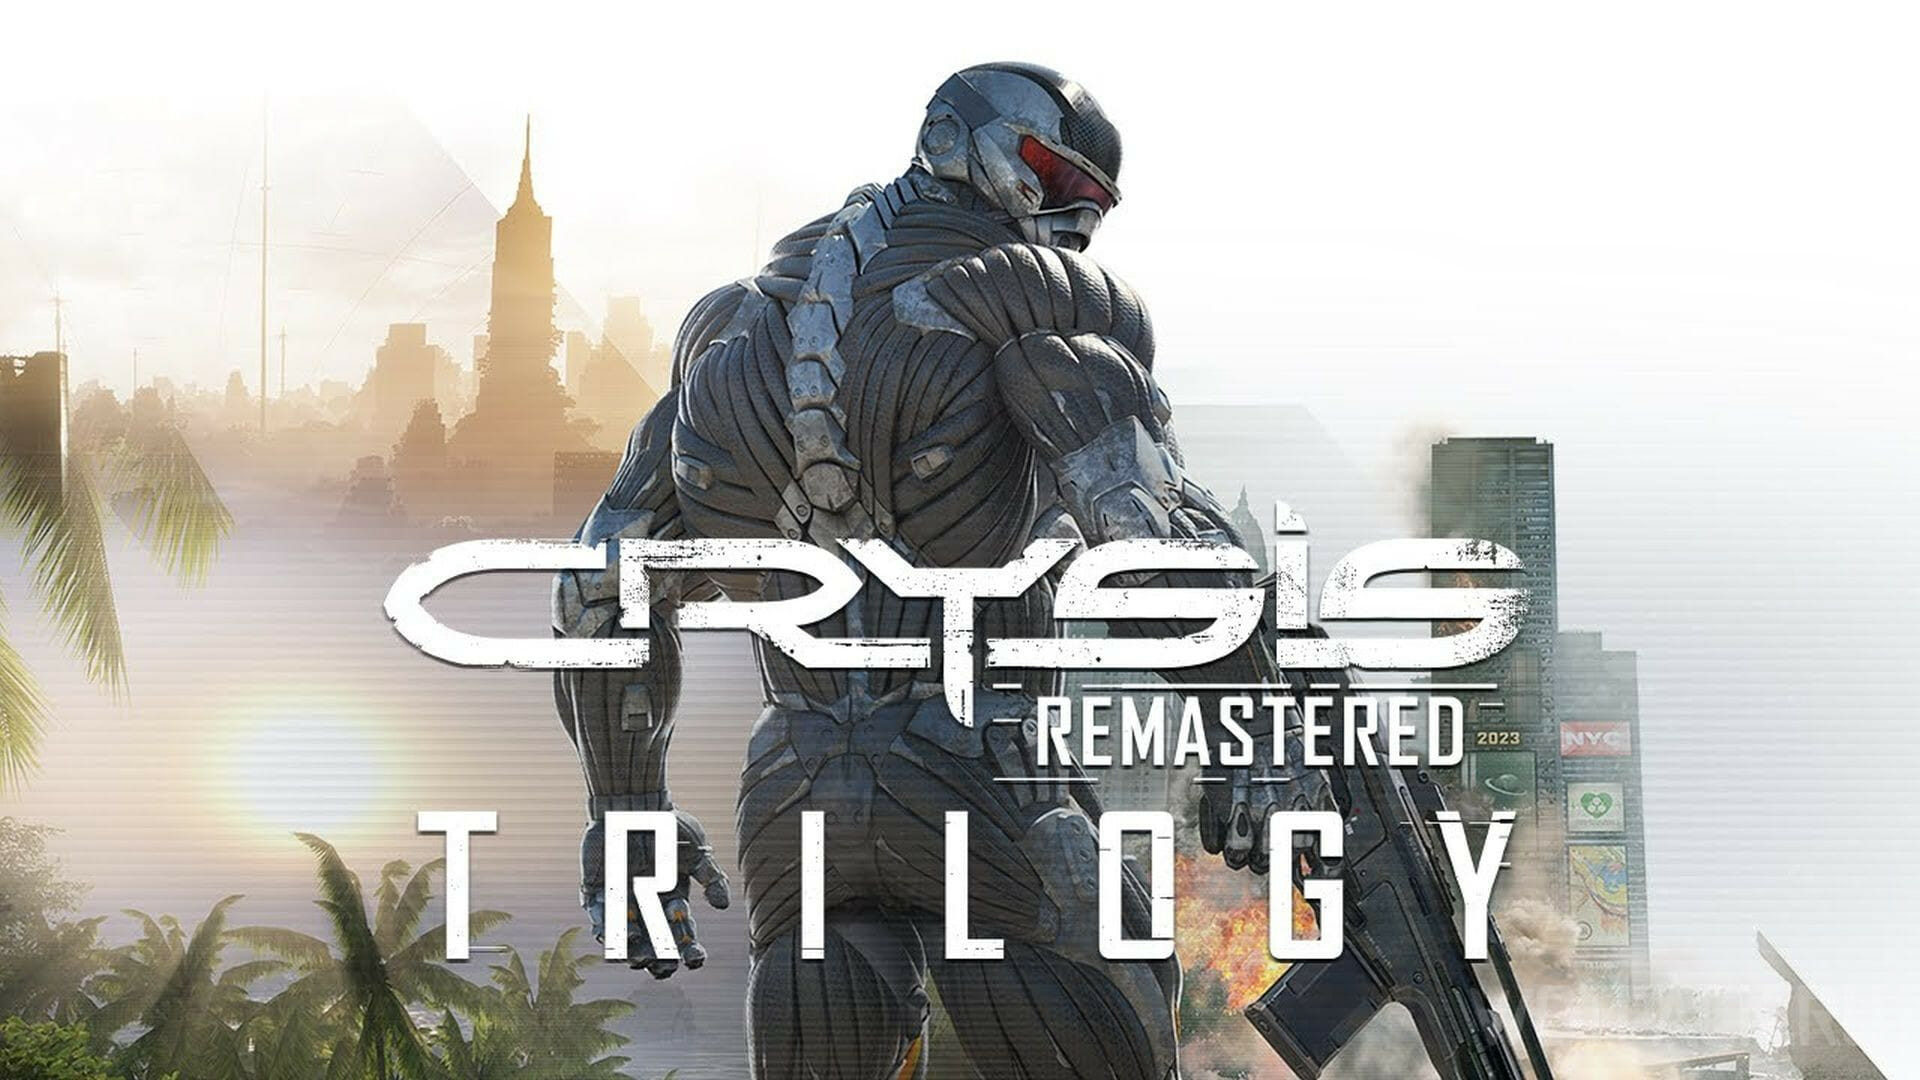 Crysis ps4. Crysis Remastered Trilogy ps4. Crysis 1 Remastered. Crysis Remastered Trilogy обложка. Crysis Remastered Trilogy Xbox.